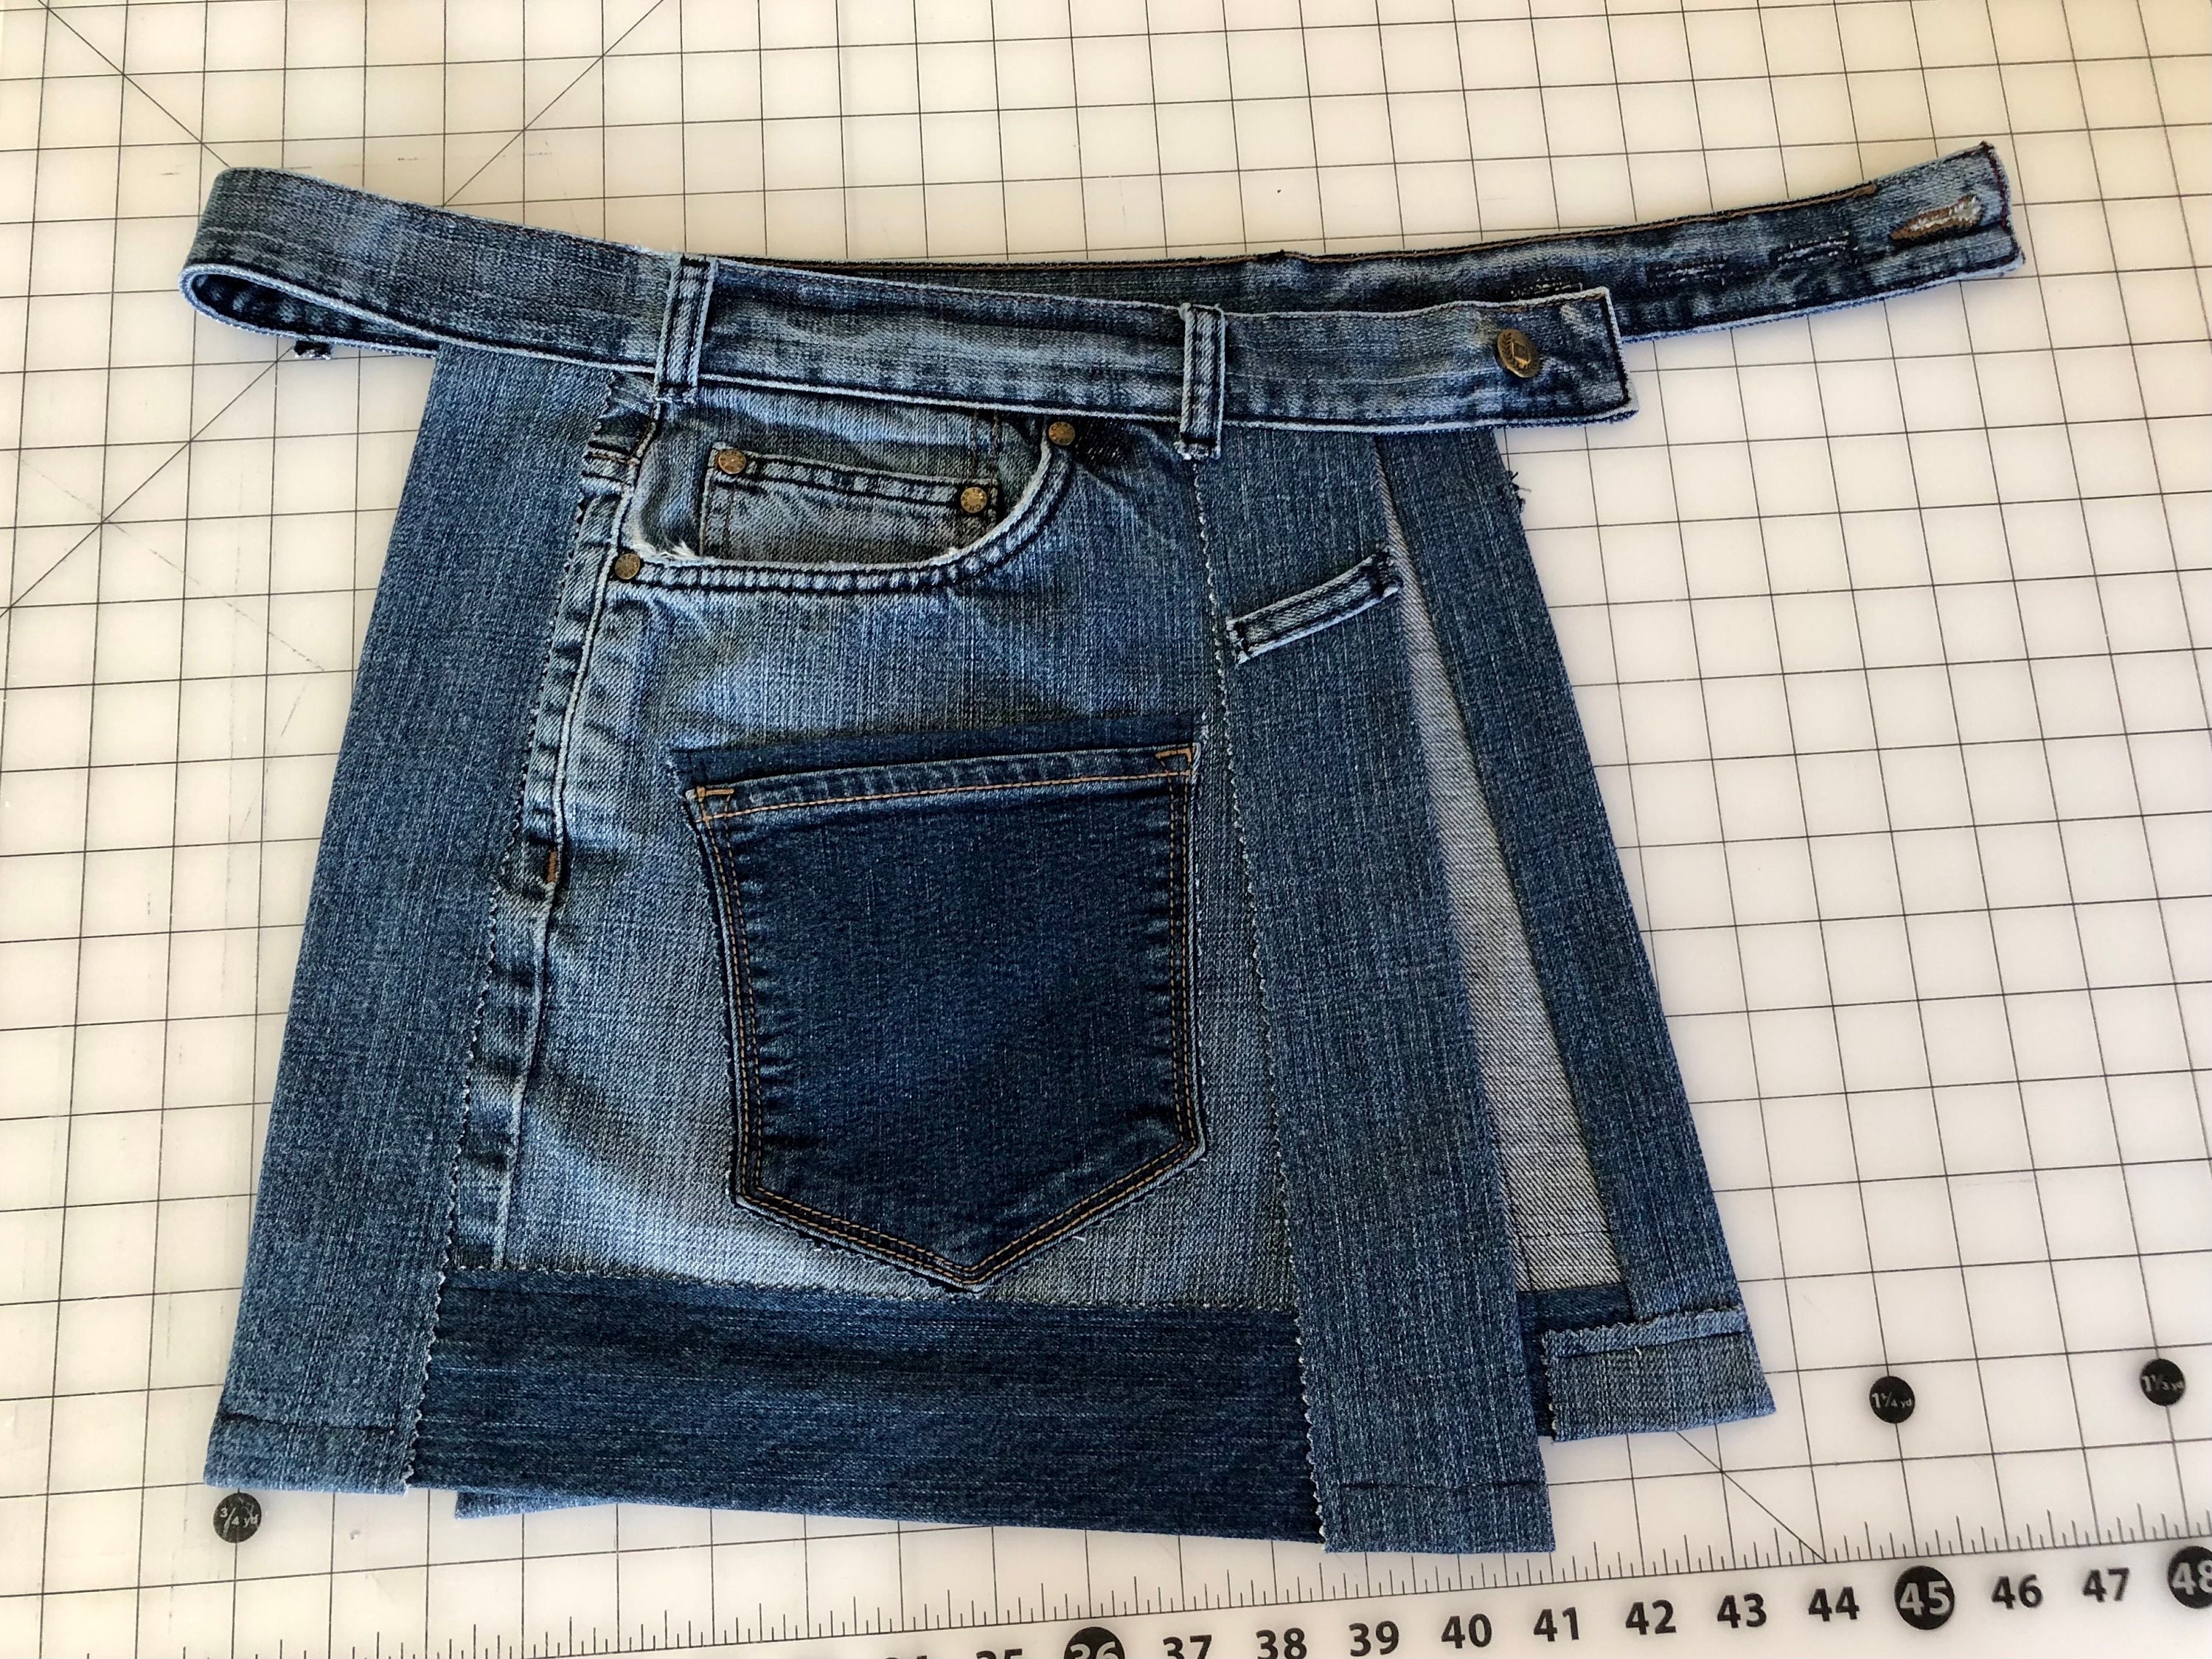 Distressed Denim Pocket Belt Bag Denim Half Skirt Utility Belt - Etsy